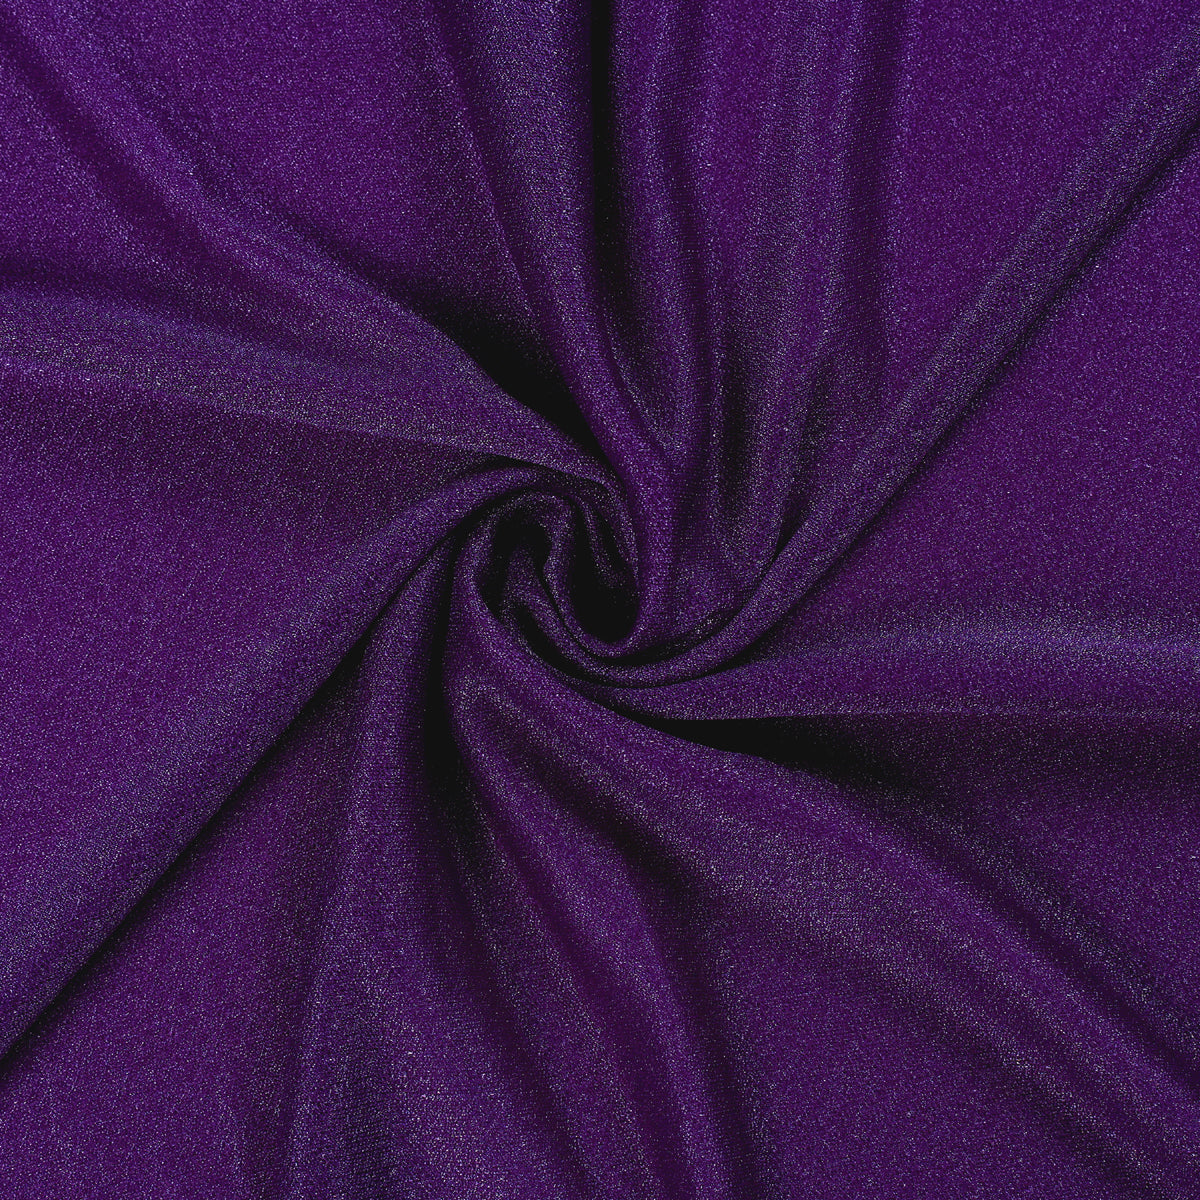 Purple,56d879e1-5434-4568-9574-4e7e51f07bf2